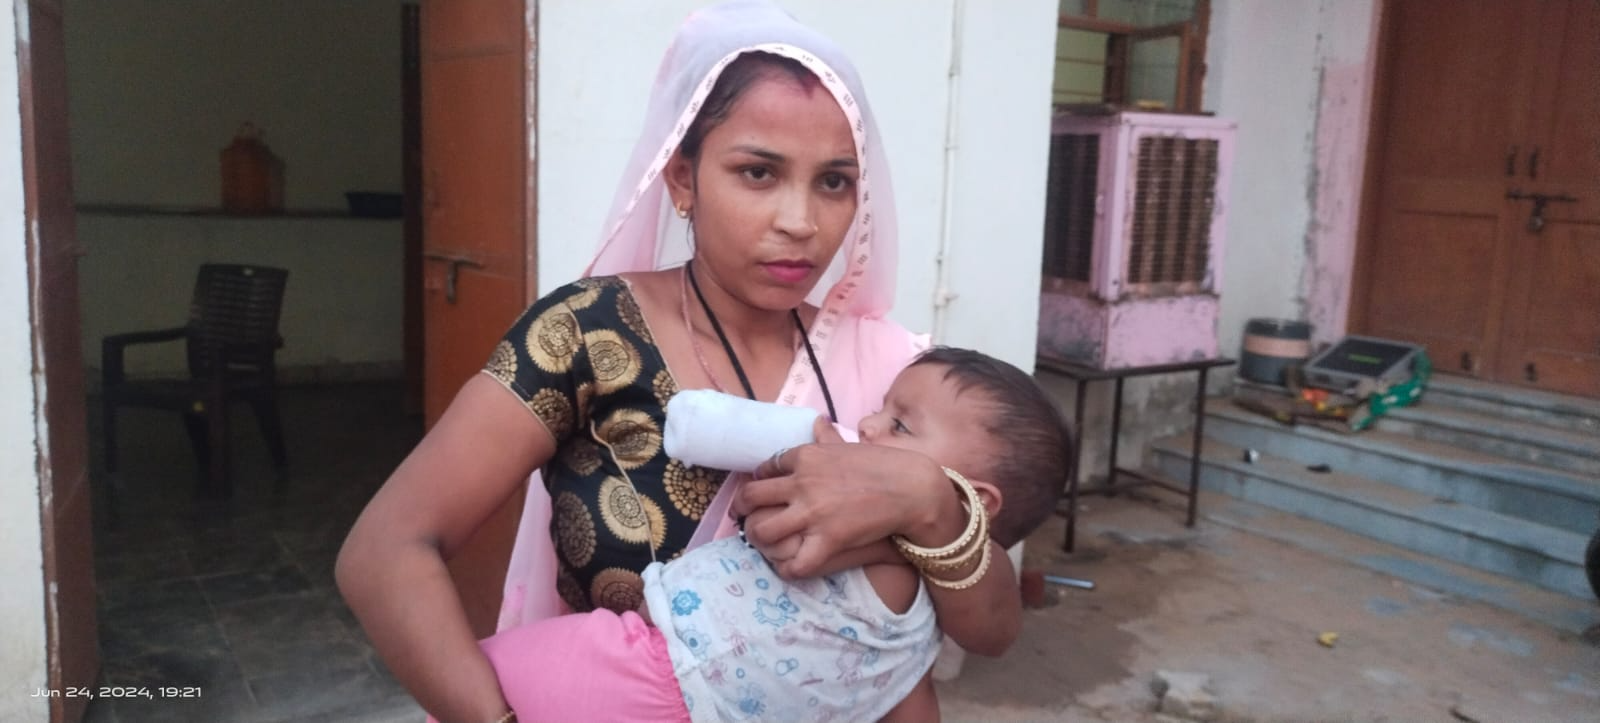 महिला सुरक्षा एवं सलाह केंद्र जमवारामगढ़ द्वारा पुलिस की मदद से दुधमुहे सात माह के बच्चे को मिला अपनी मां का प्यार